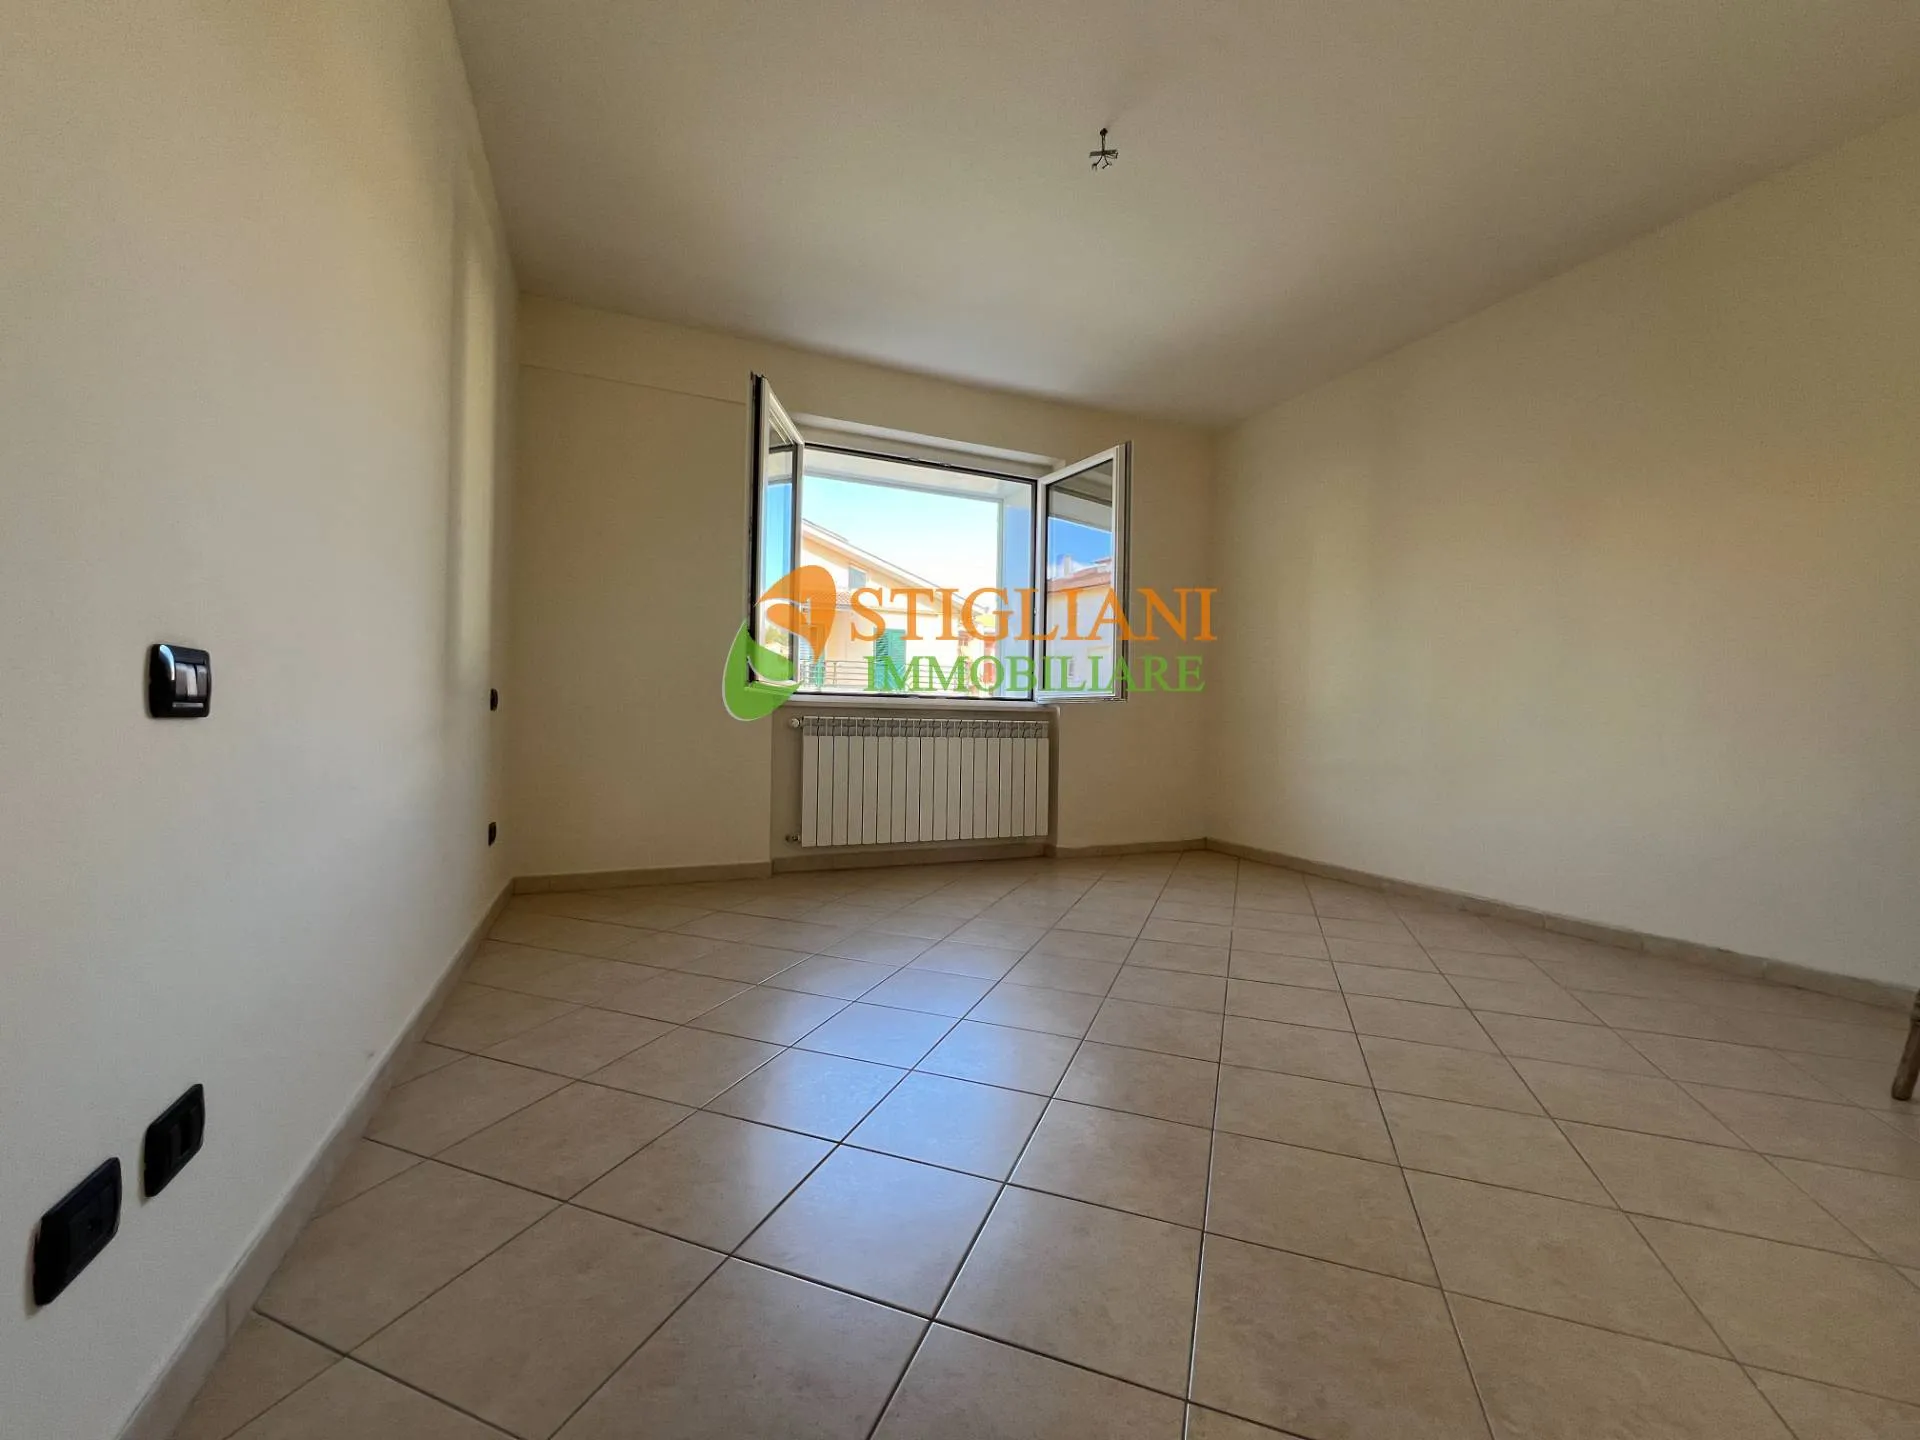 Immagine per Appartamento in vendita a Ripalimosani Via San Rocco